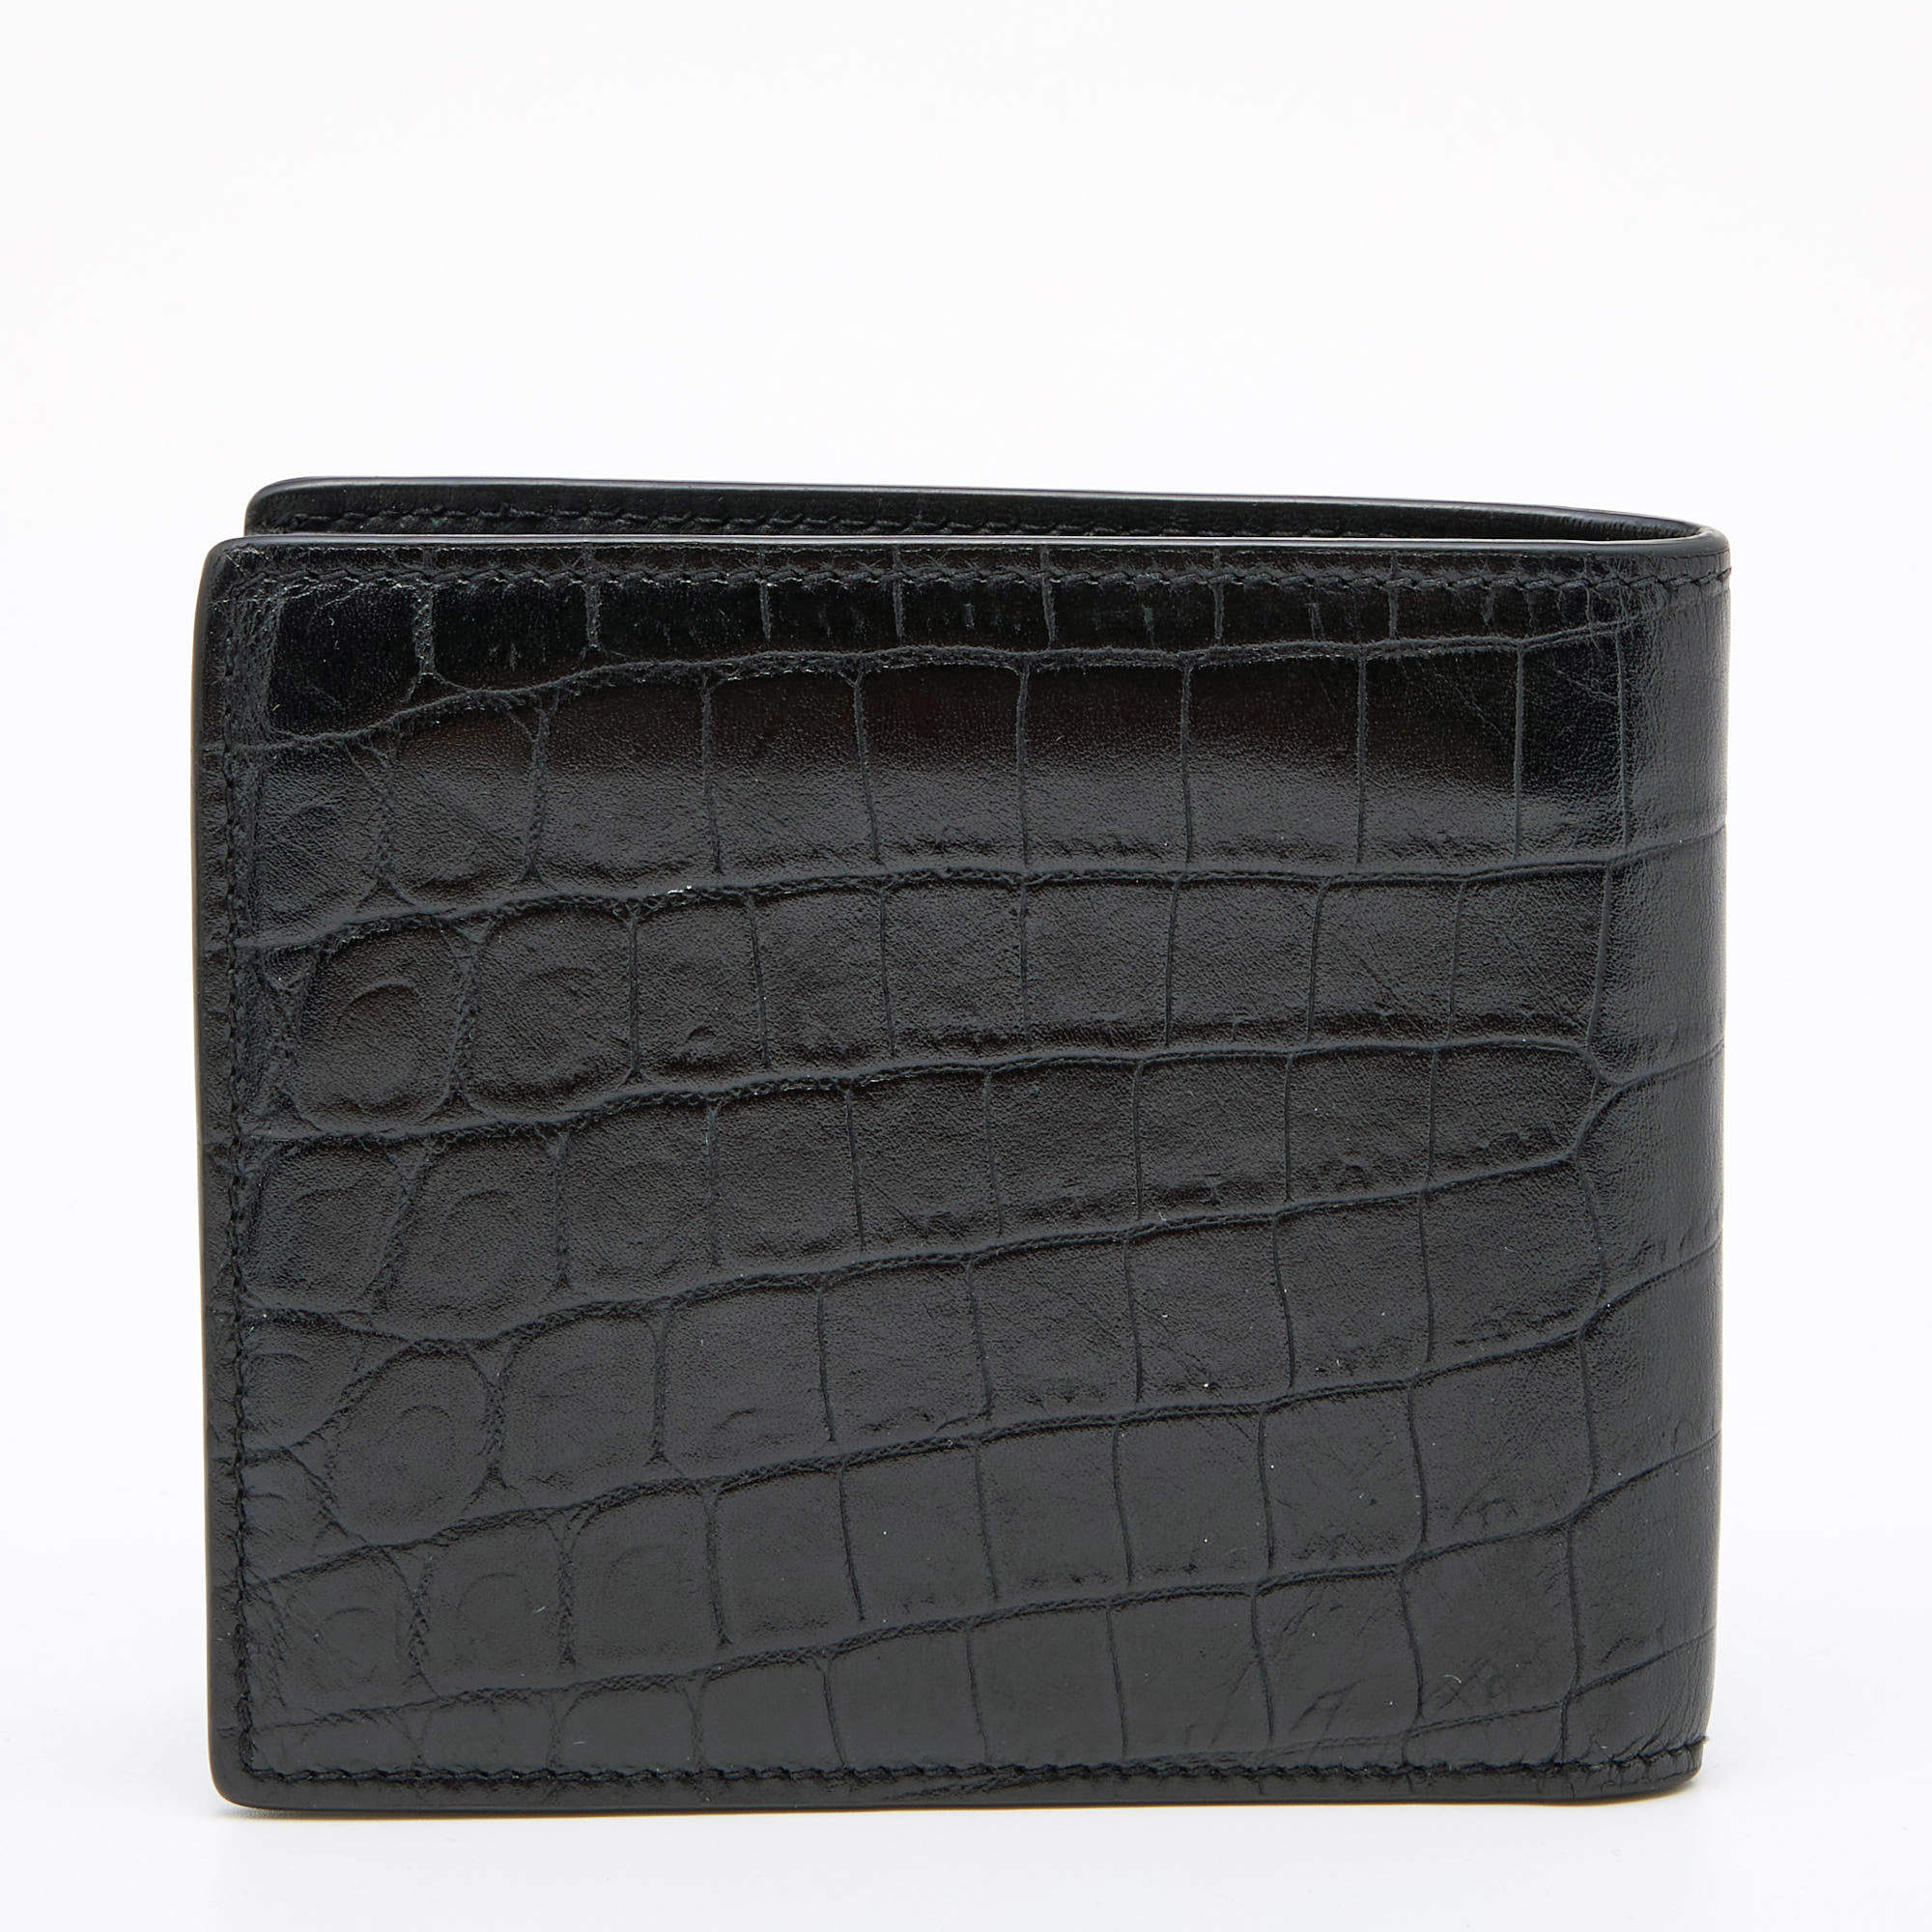 Saint Laurent Paris EAST/WEST wallet with coin purse in coated bark leather, Saint Laurent